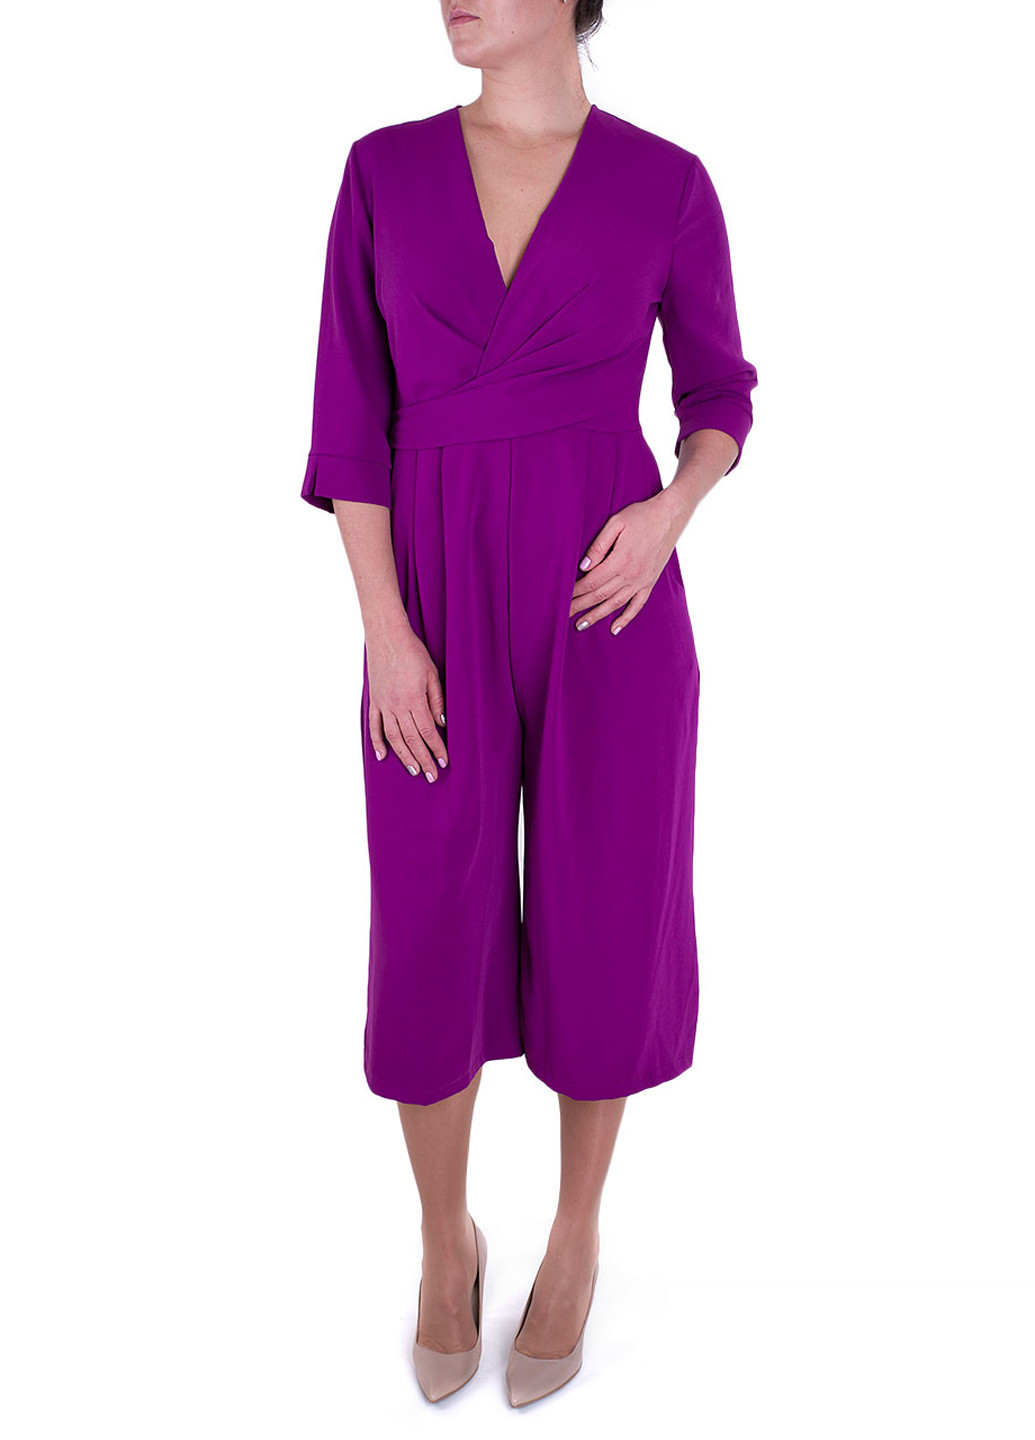 Комбинезон Miss Miss комбинезон-брюки однотонный фиолетовый кэжуал полиэстер